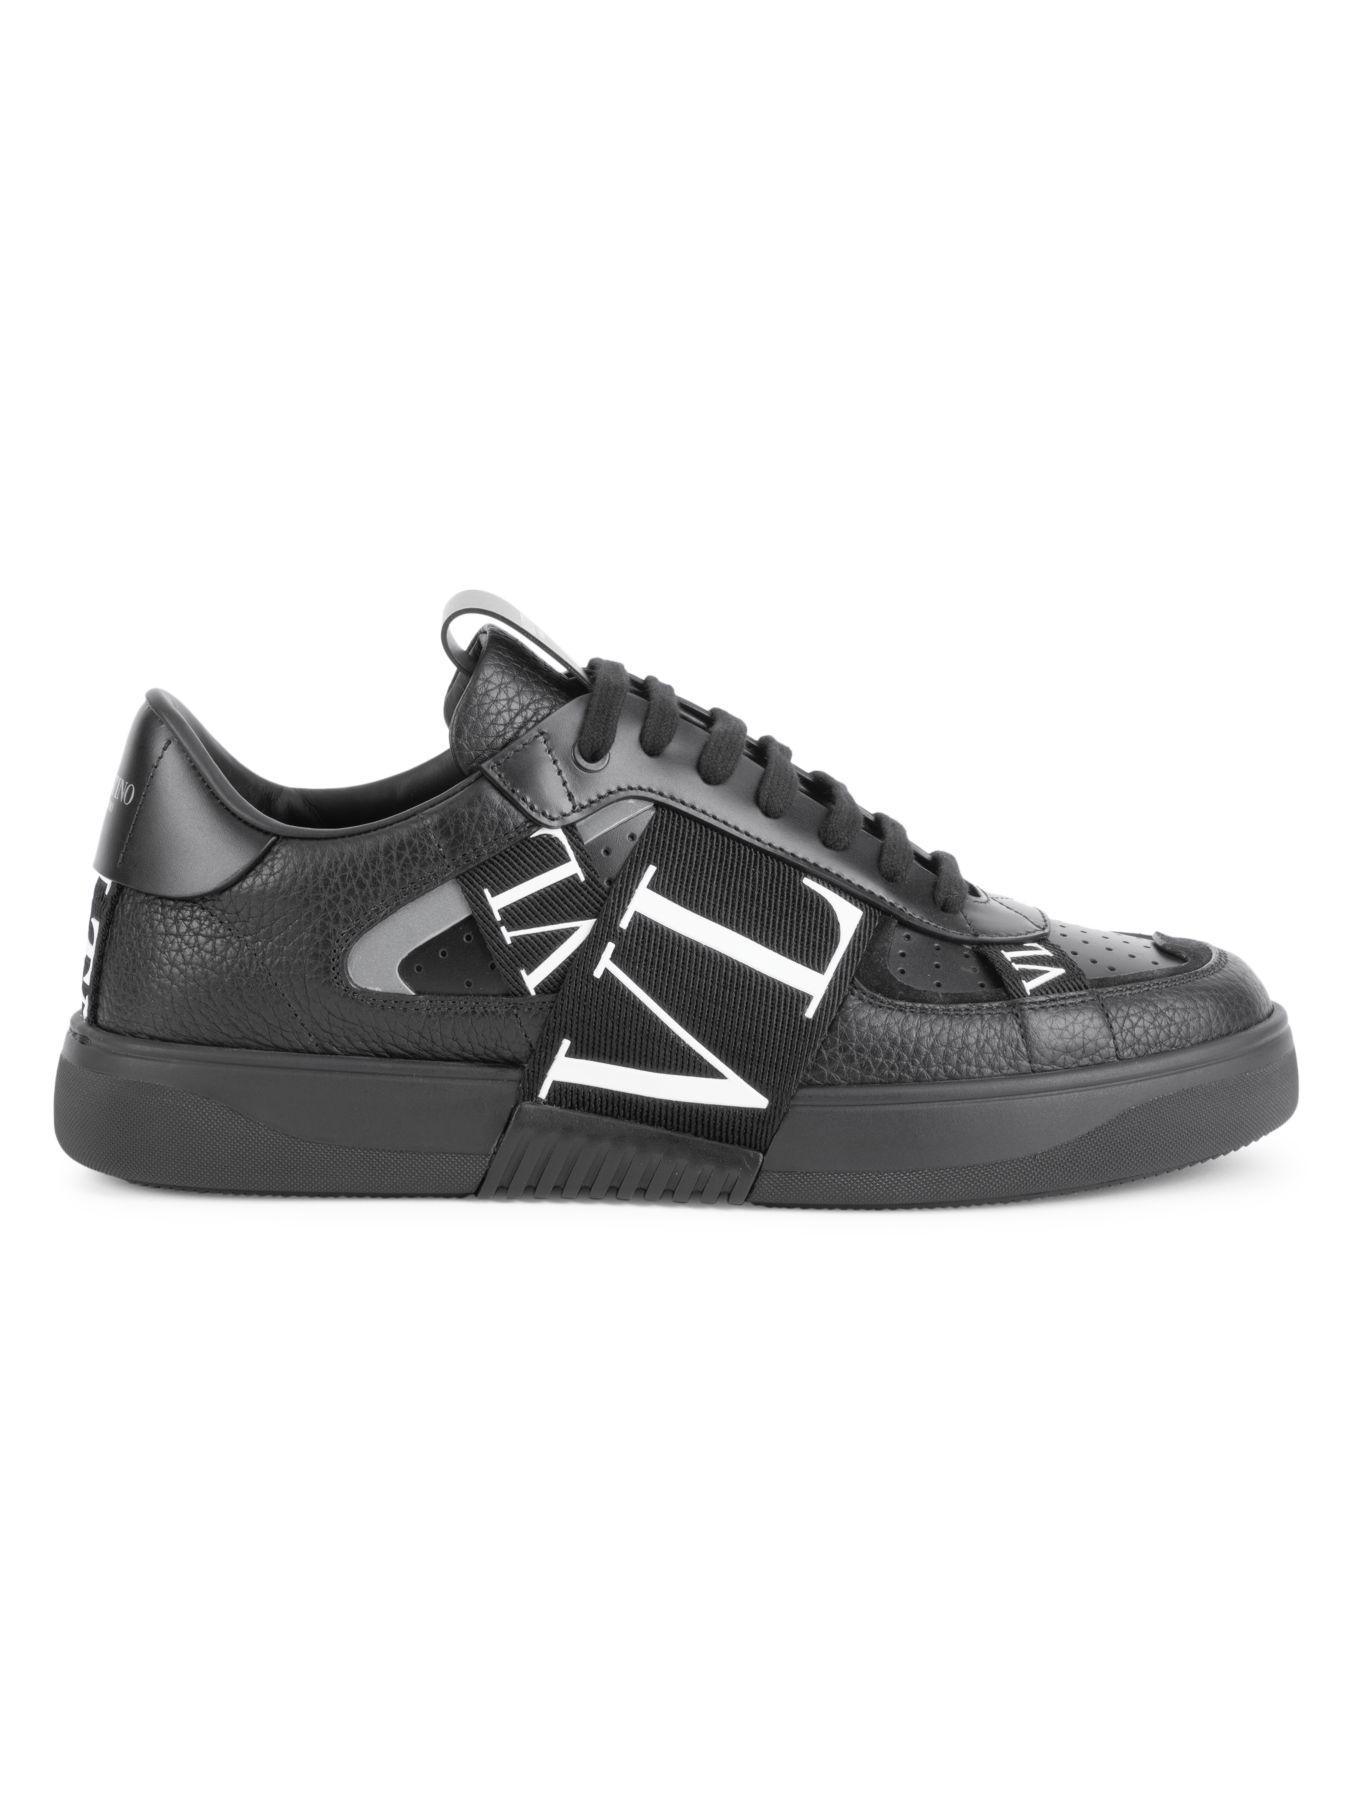 Valentino Rubber Garavani Vl7n Banded Sneakers in Black for Men - Lyst